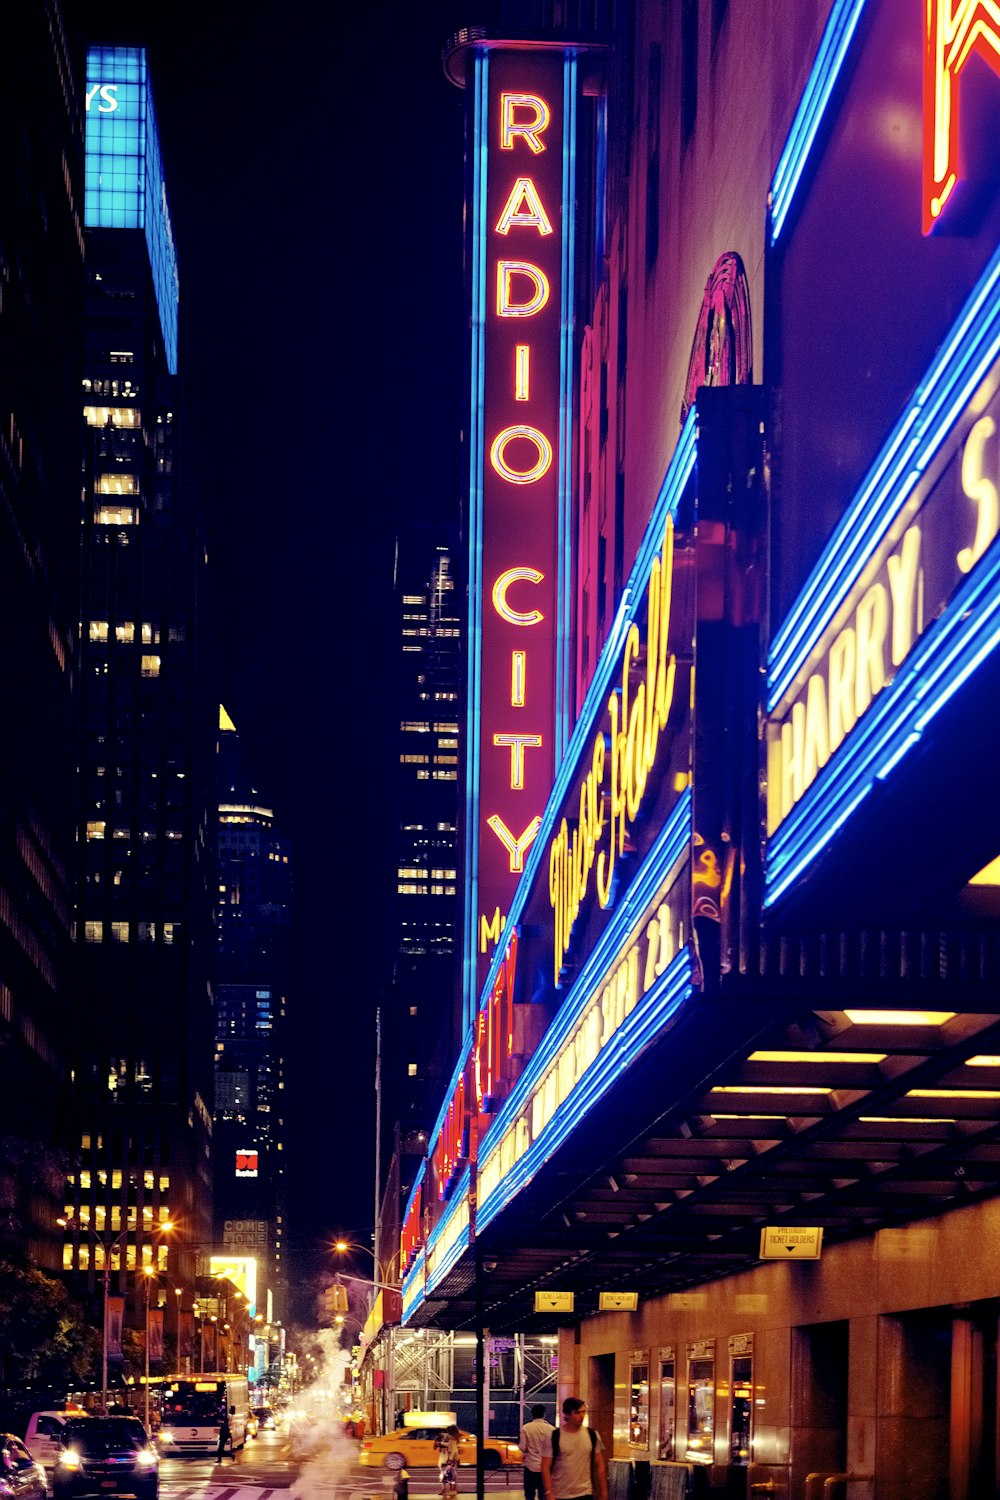 inlighted Radio City signage